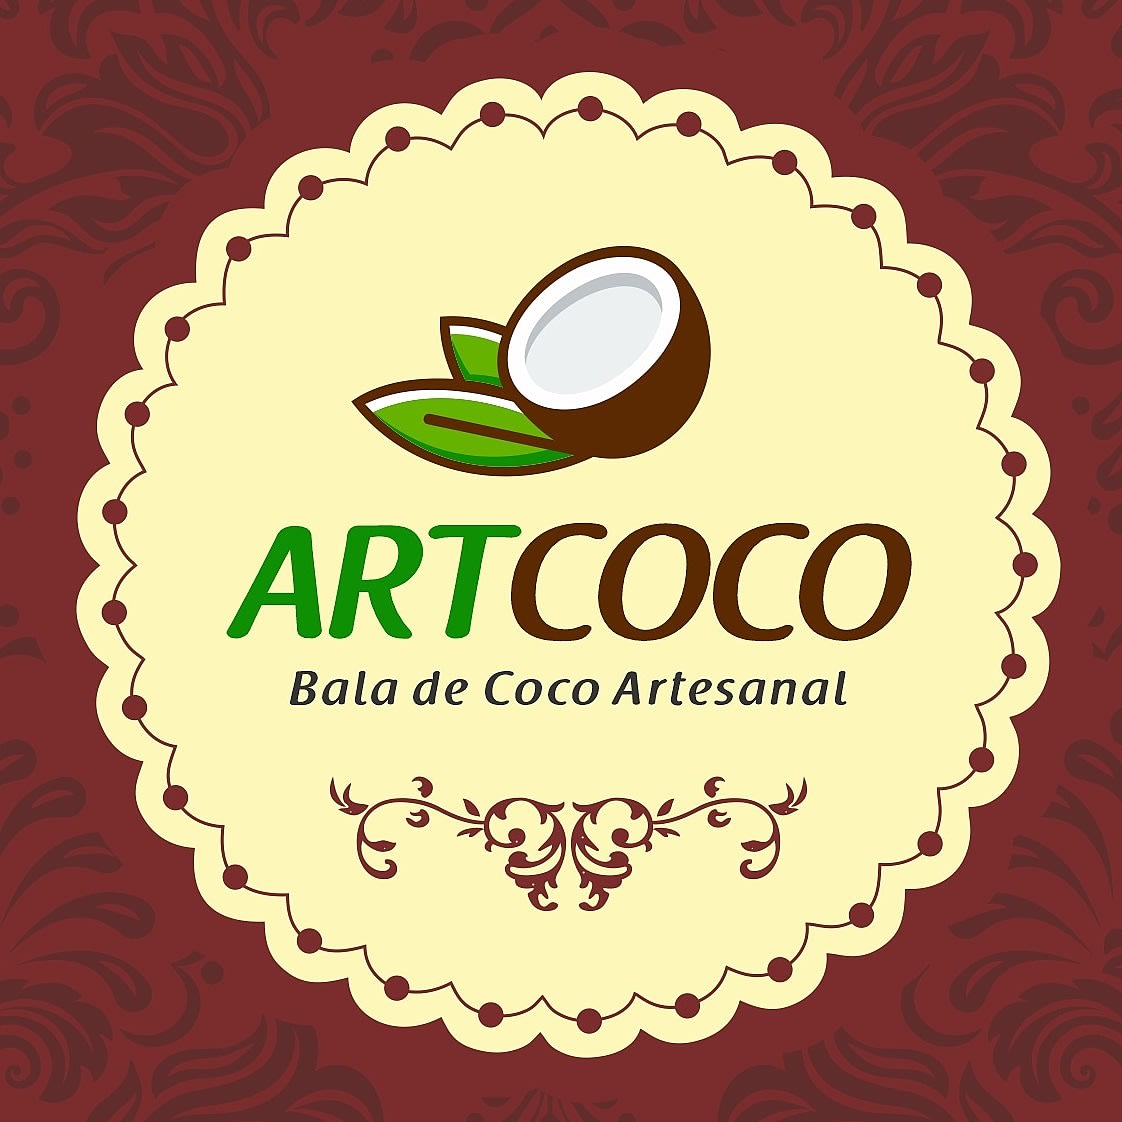 Artcoco Balas de Coco Artesanal